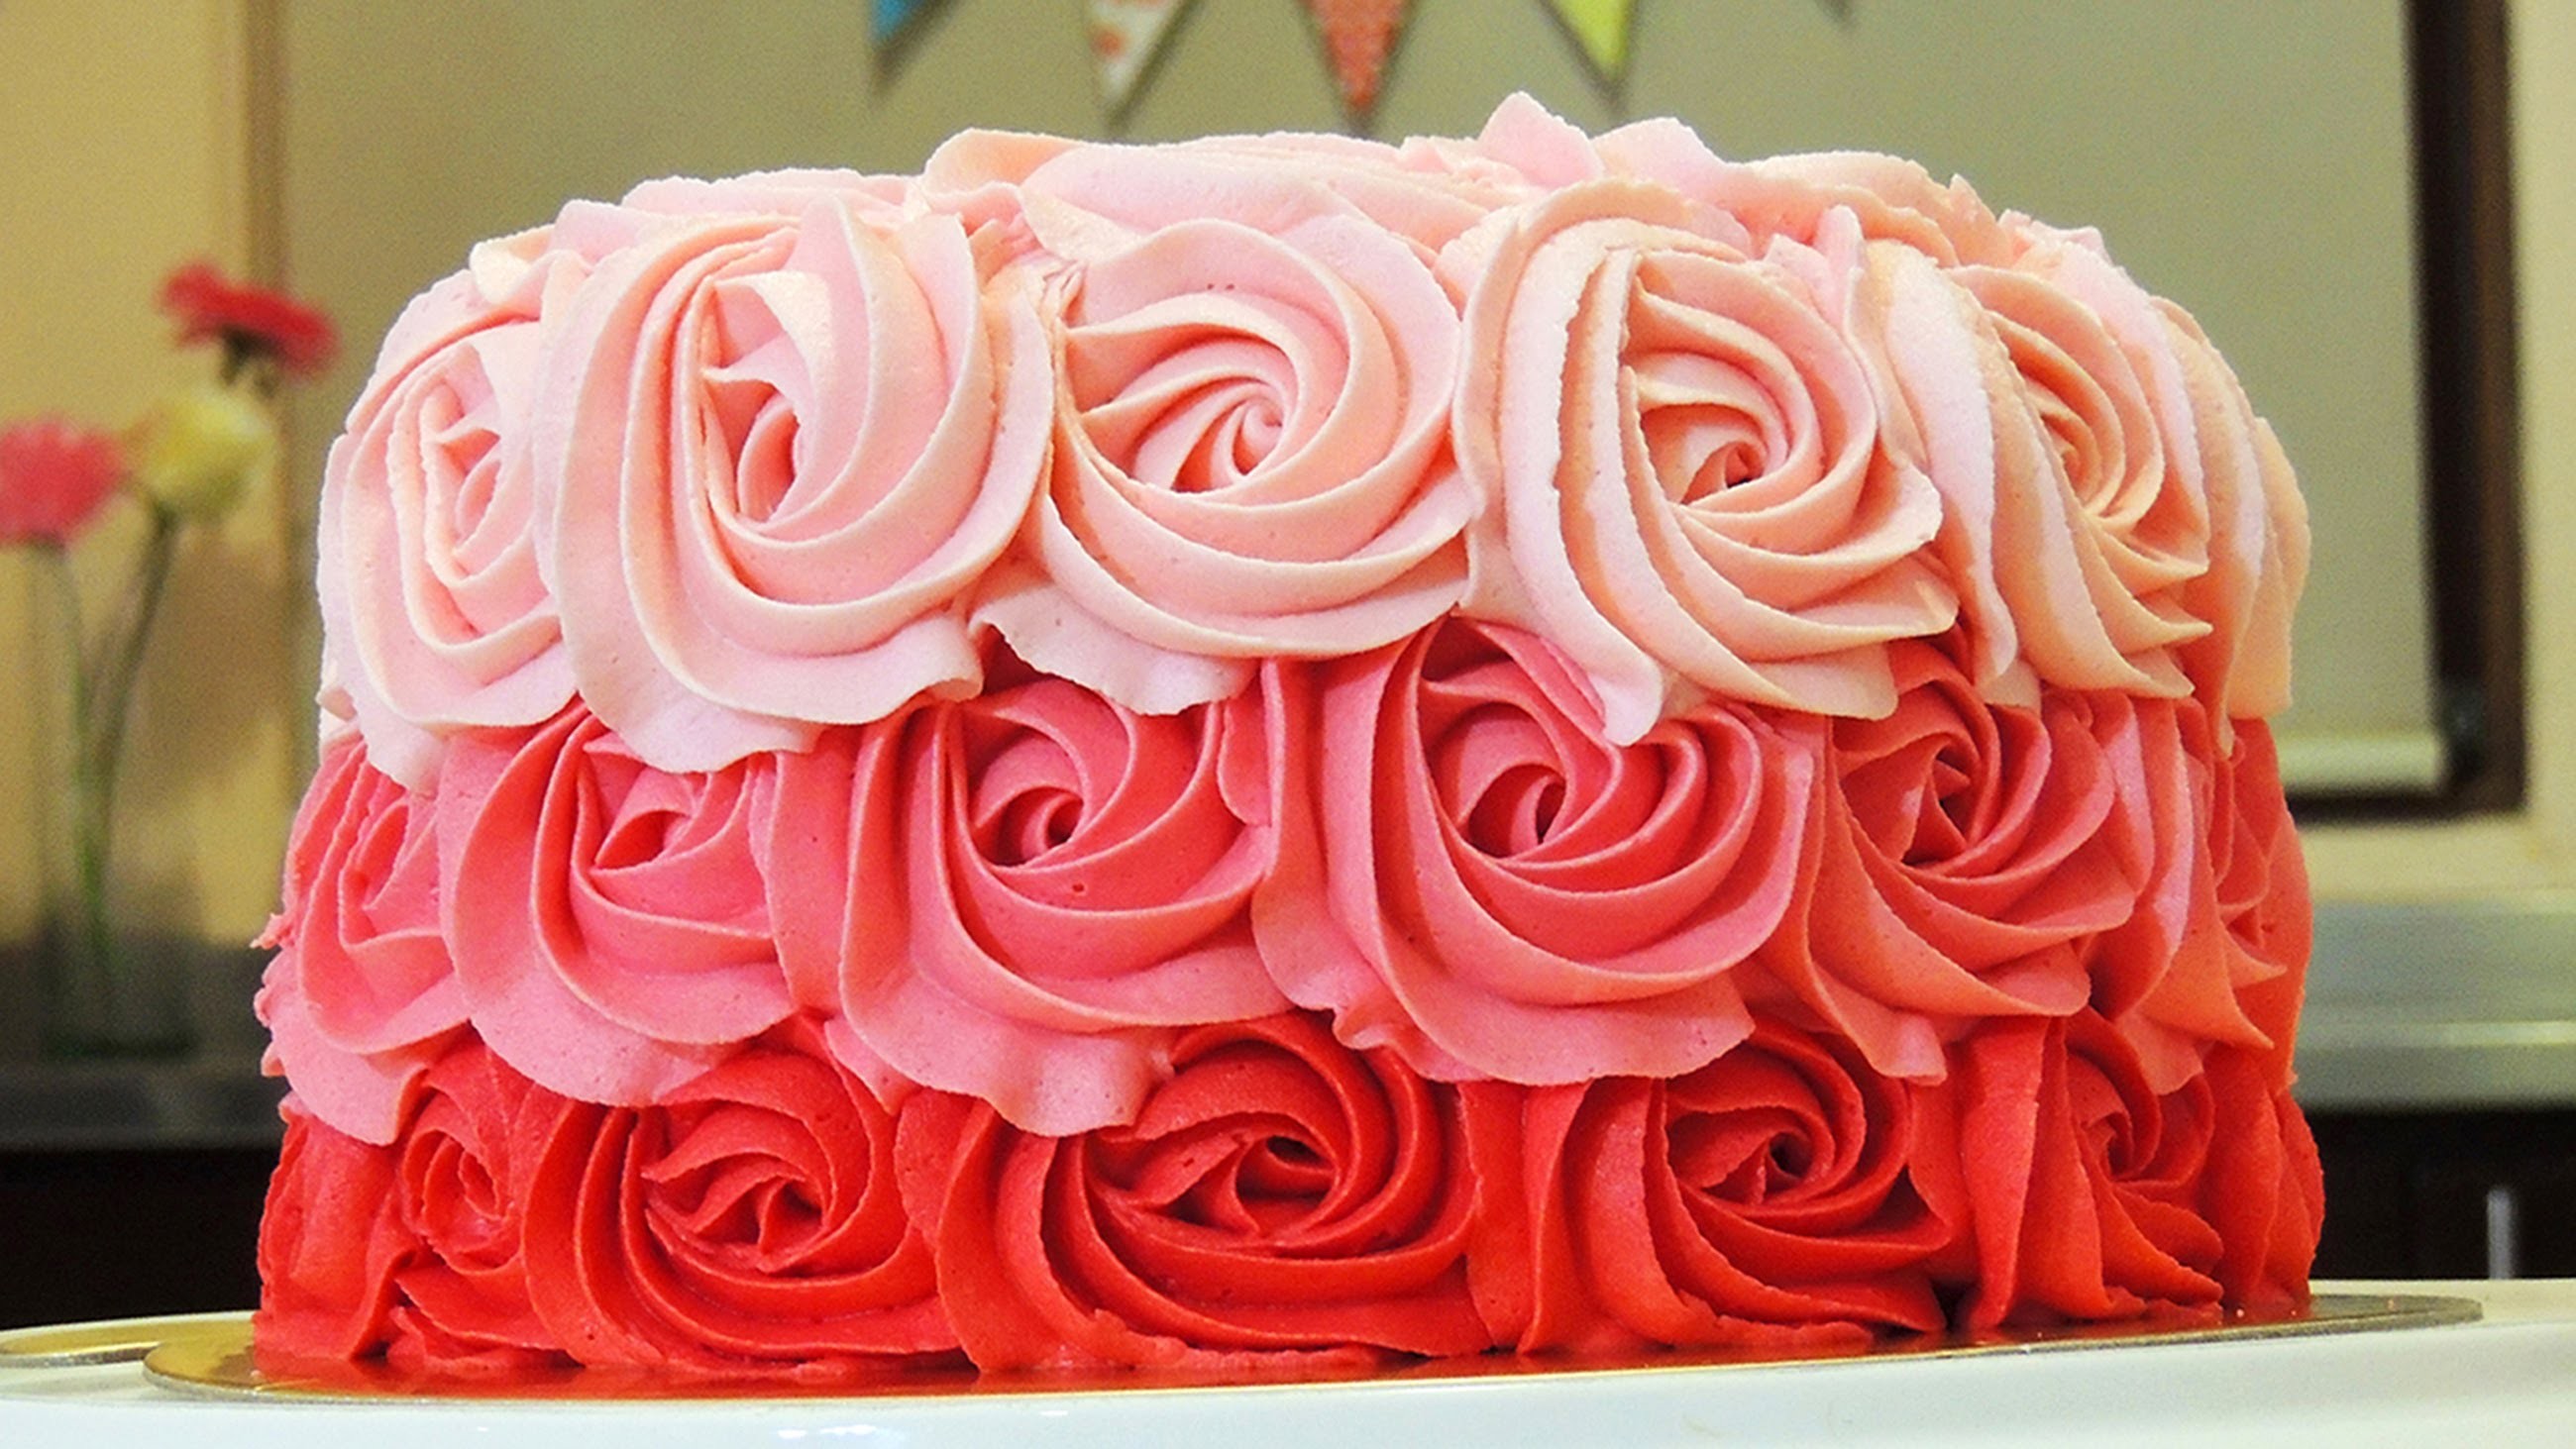 PASTEL DE ROSAS CON BETÚN DE MANTEQUILLA (Ombre Rose Cake Tutorial)